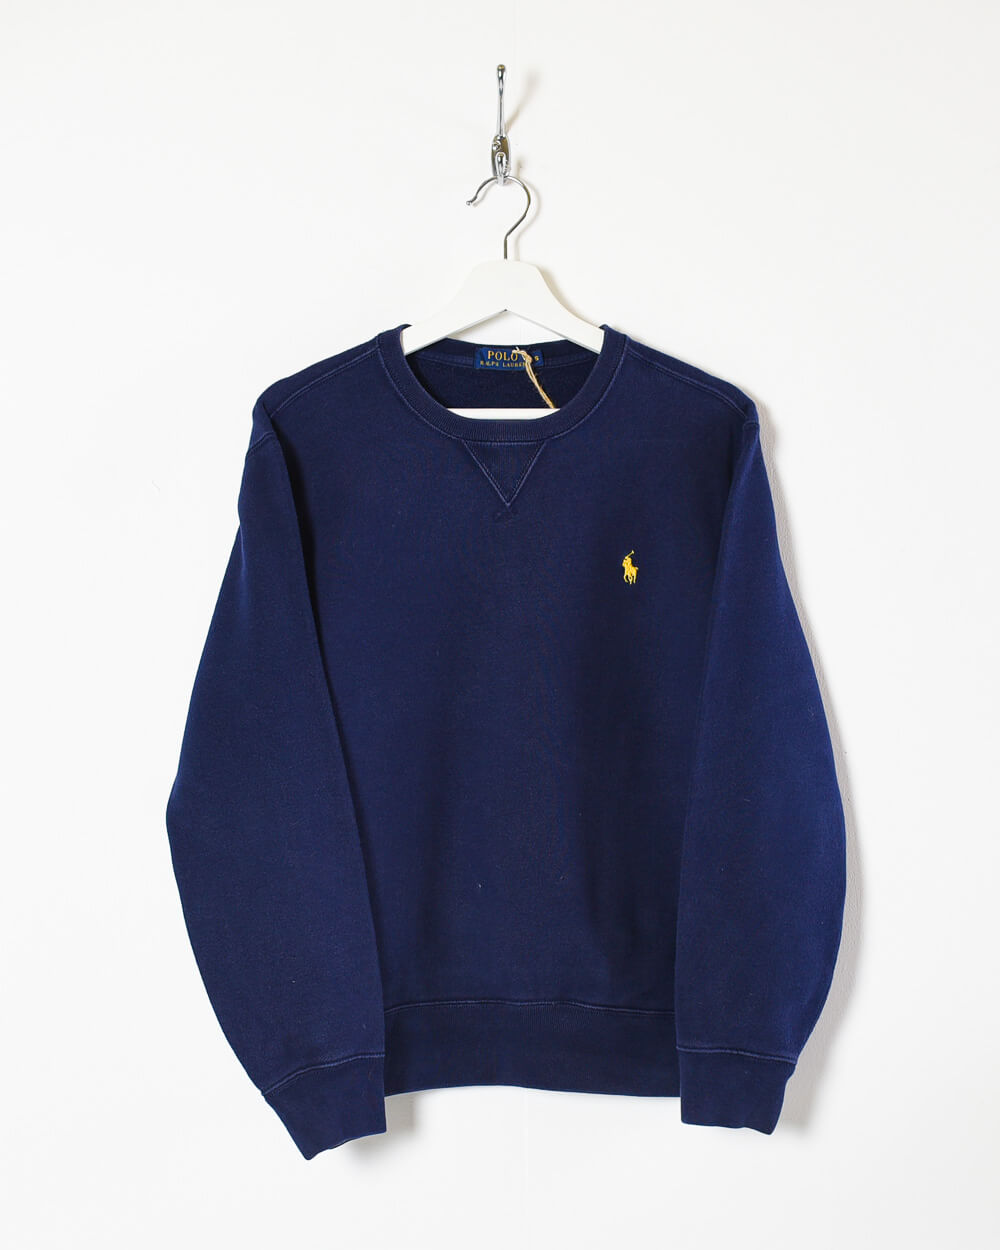 Navy Ralph Lauren Sweatshirt - Small